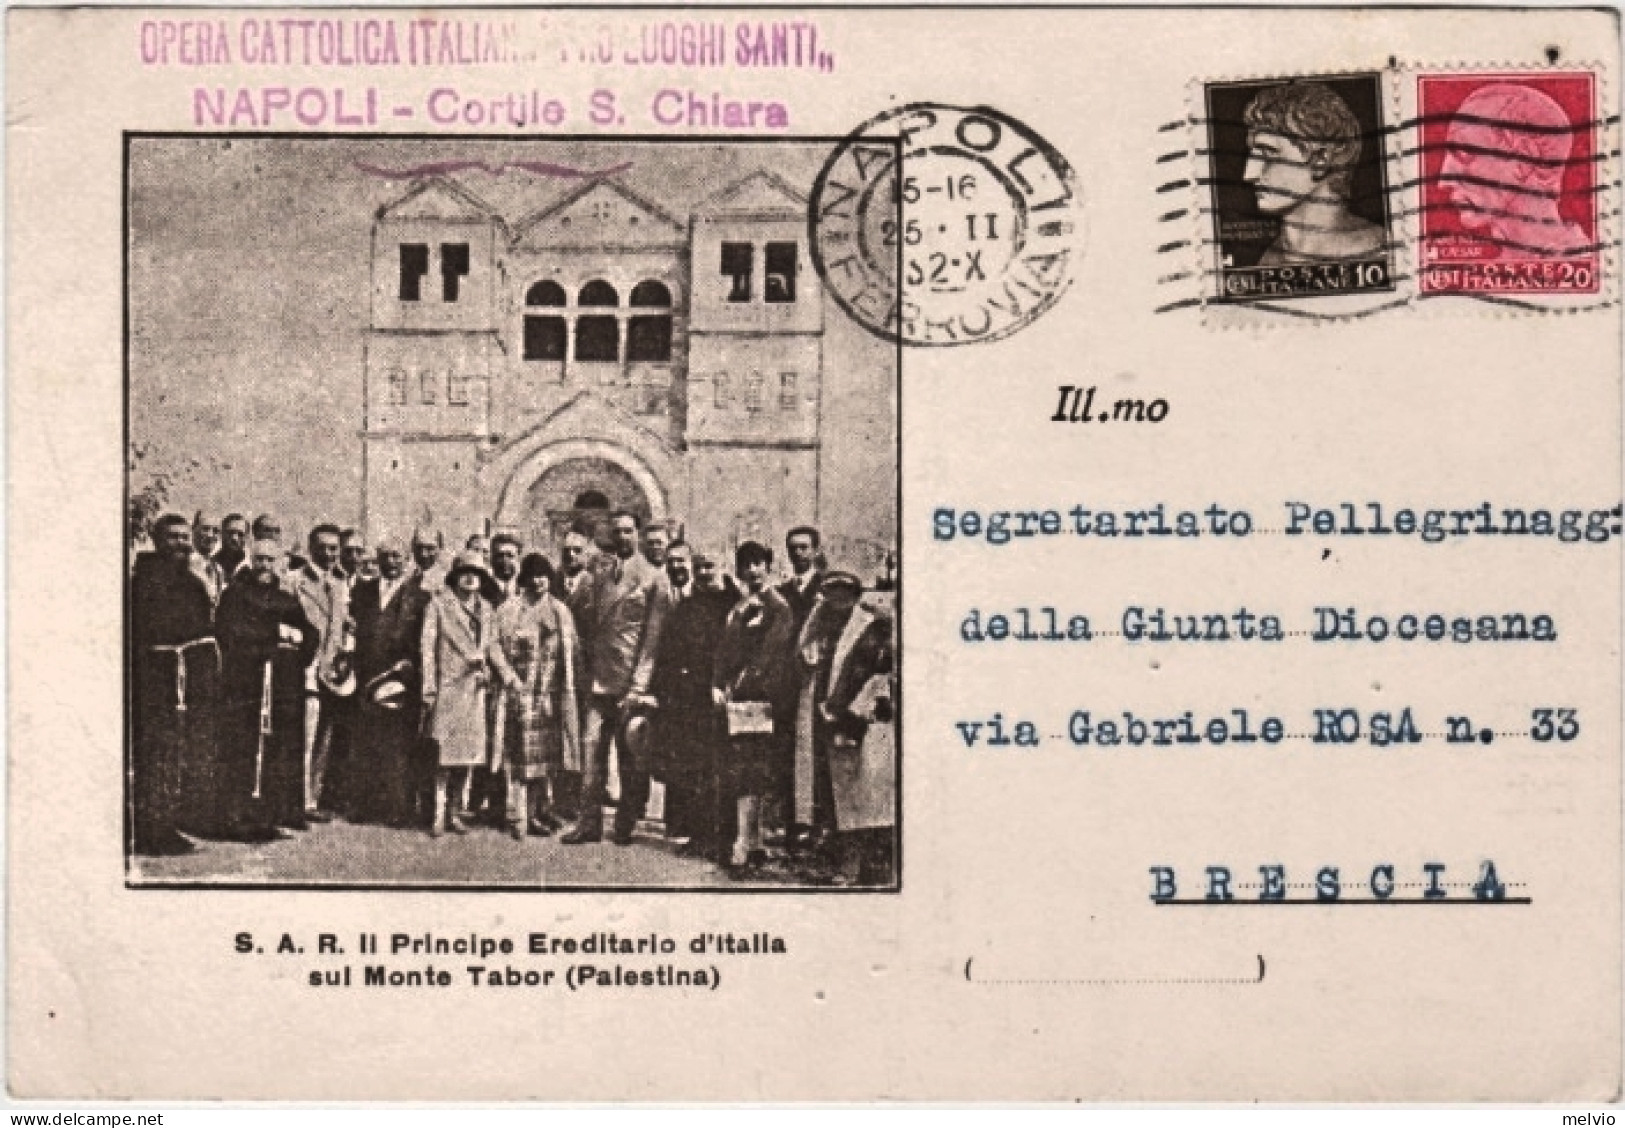 1932-S.A.R. Il Principe Ereditario D'Italia Sul Monte Tabor (Palestina) Cartolin - Palestine